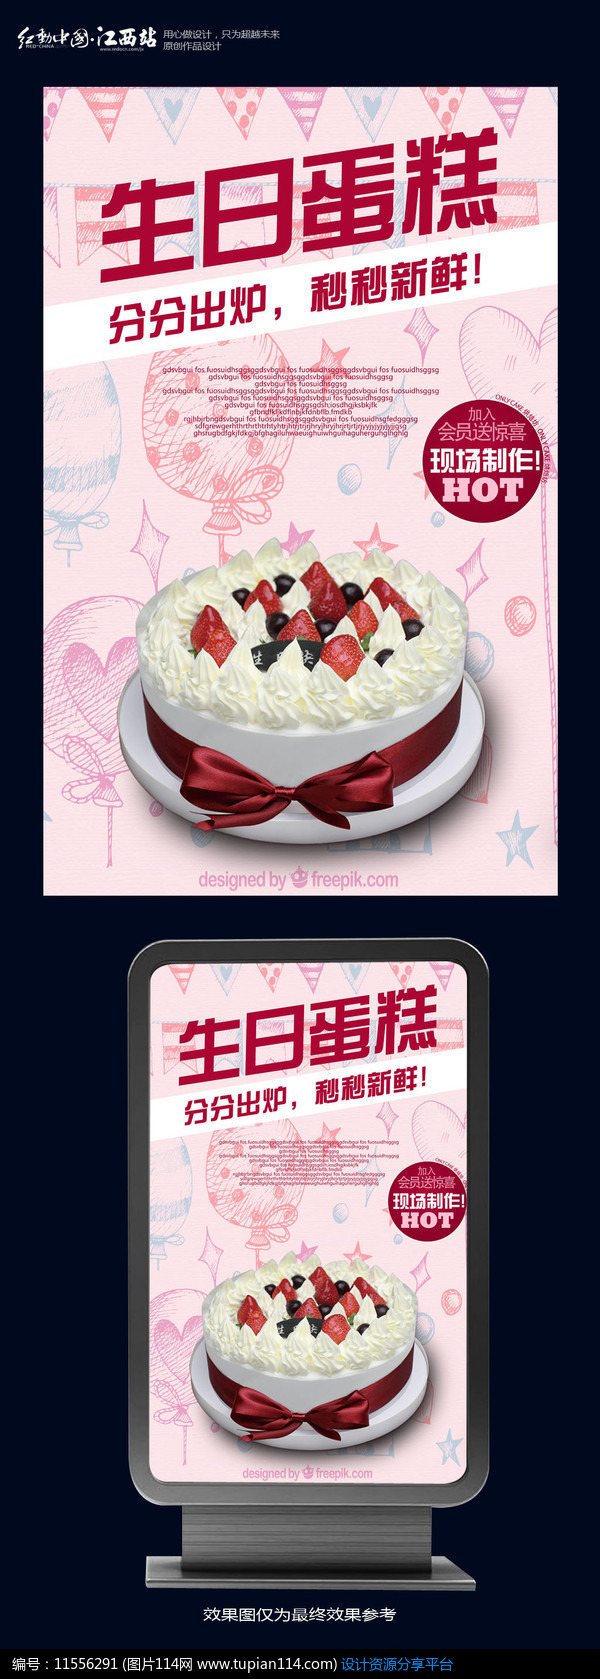 [原创] 生日蛋糕定制蛋糕店海报设计